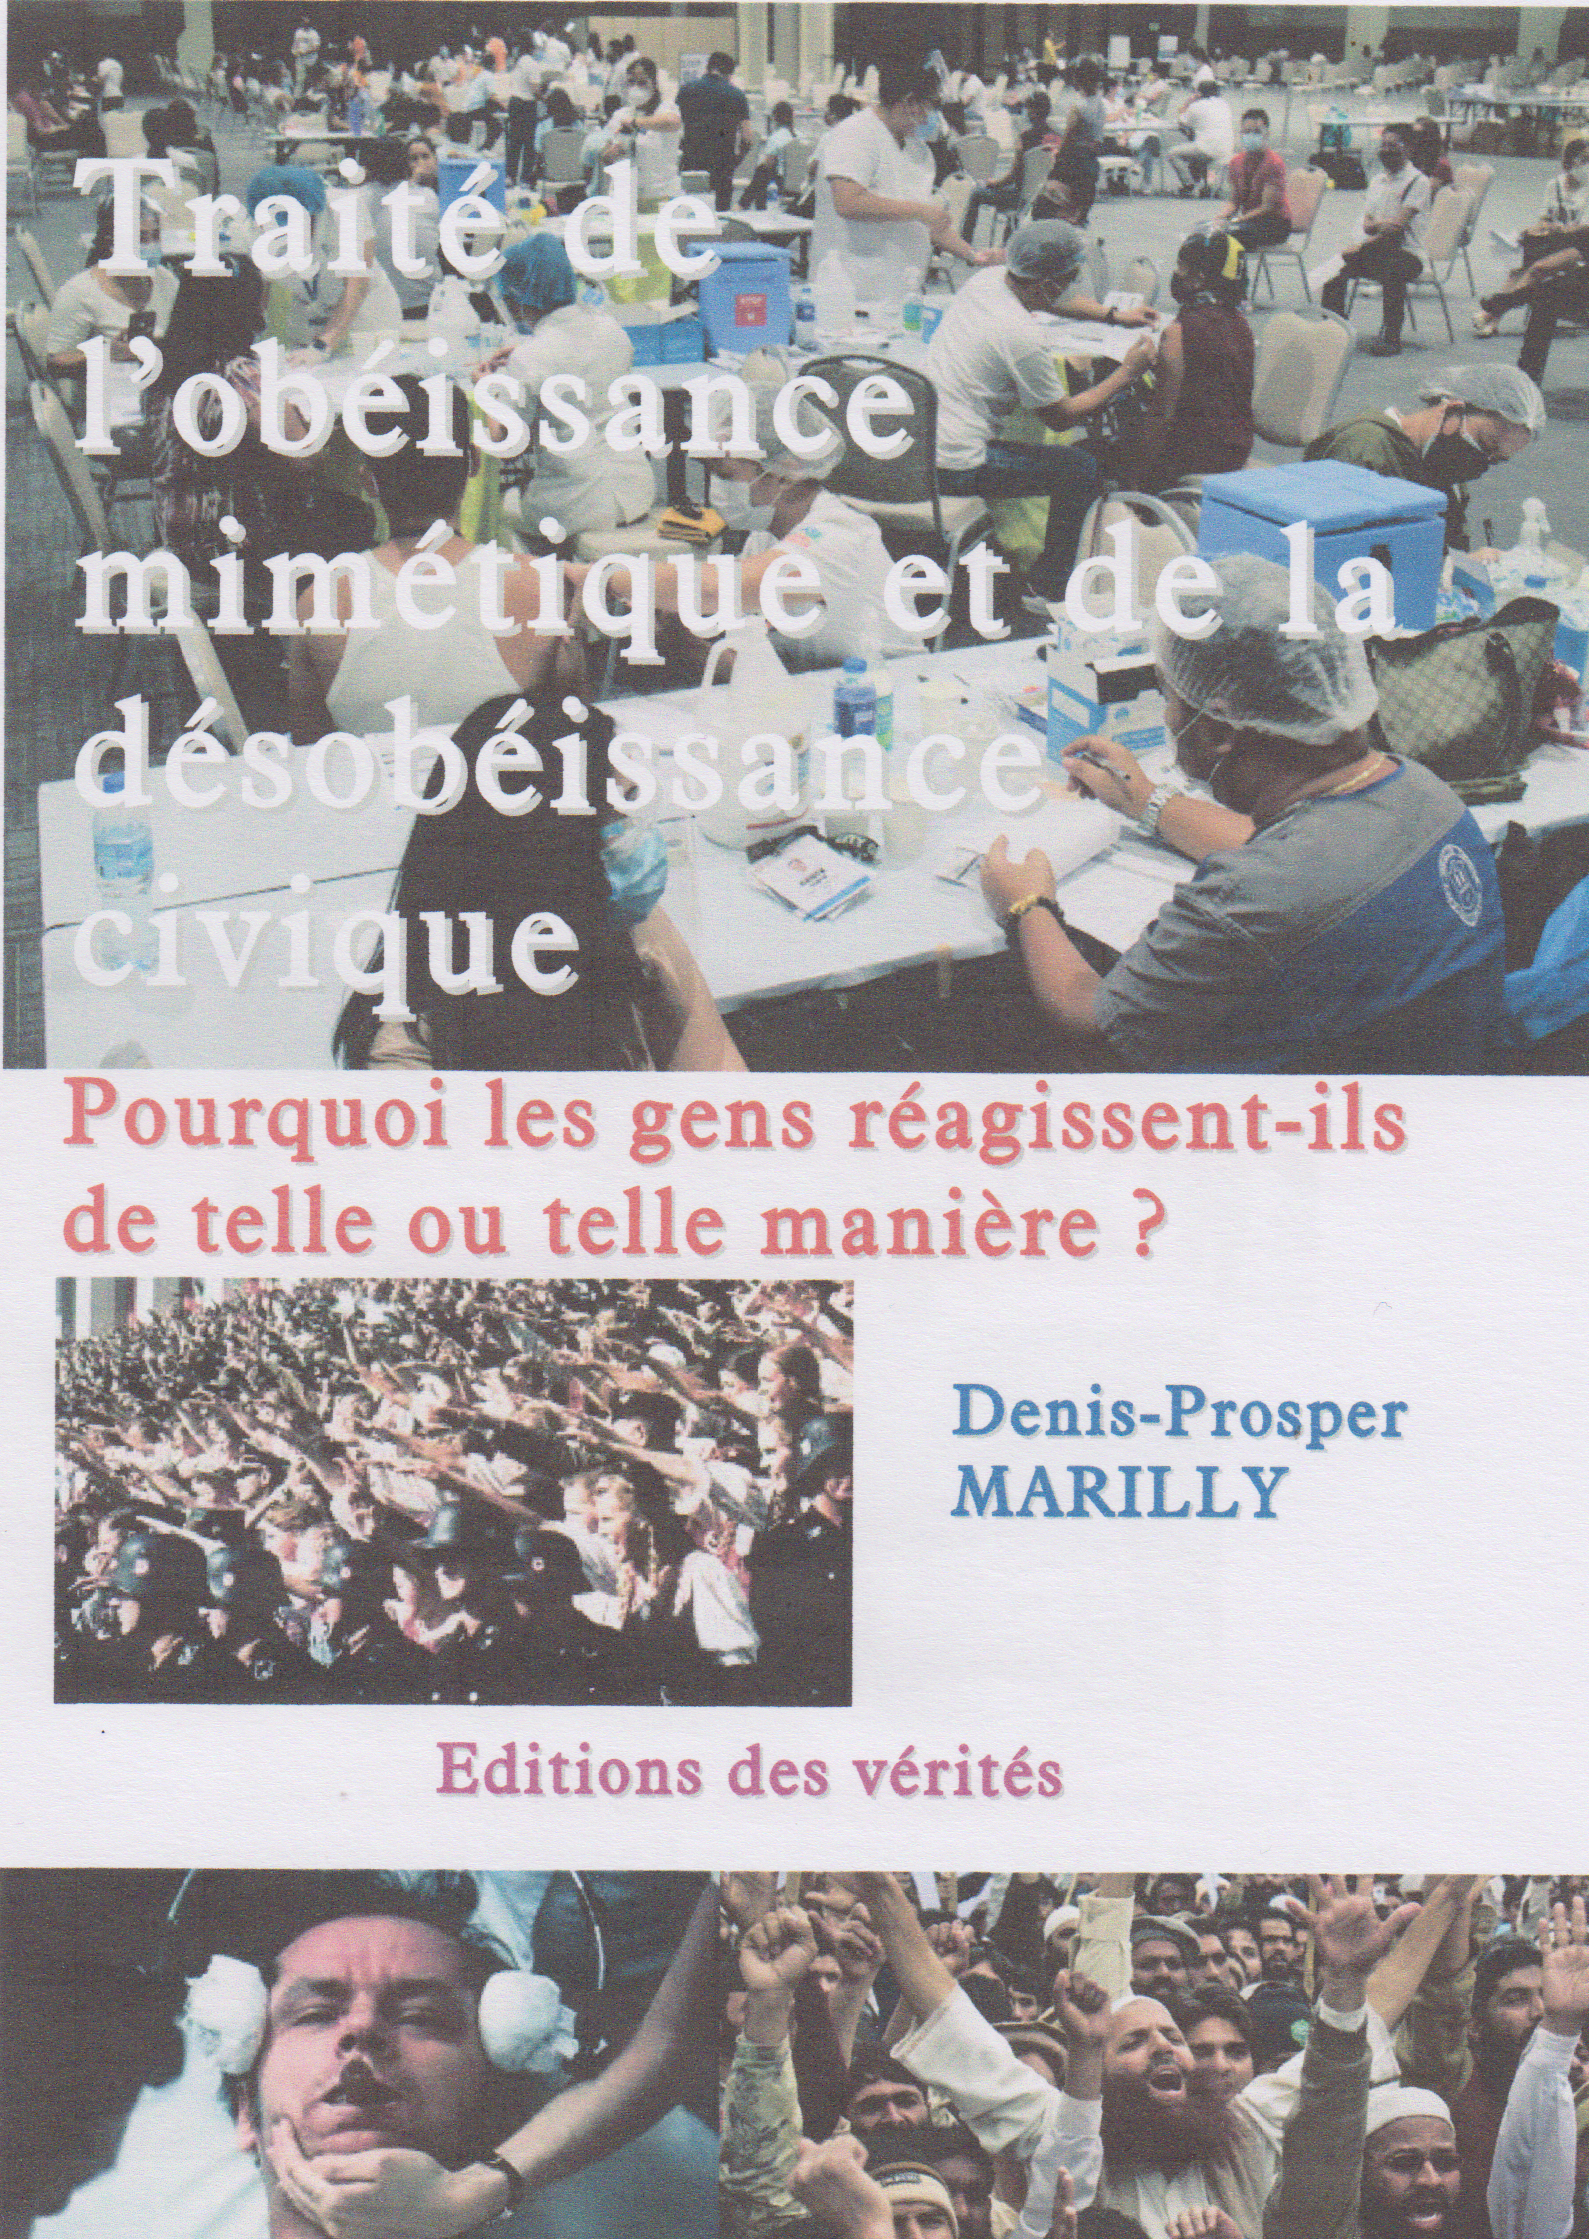 Traité de l'obéissance mimétique et de la désobéissance civique - Denis-Prosper Marilly